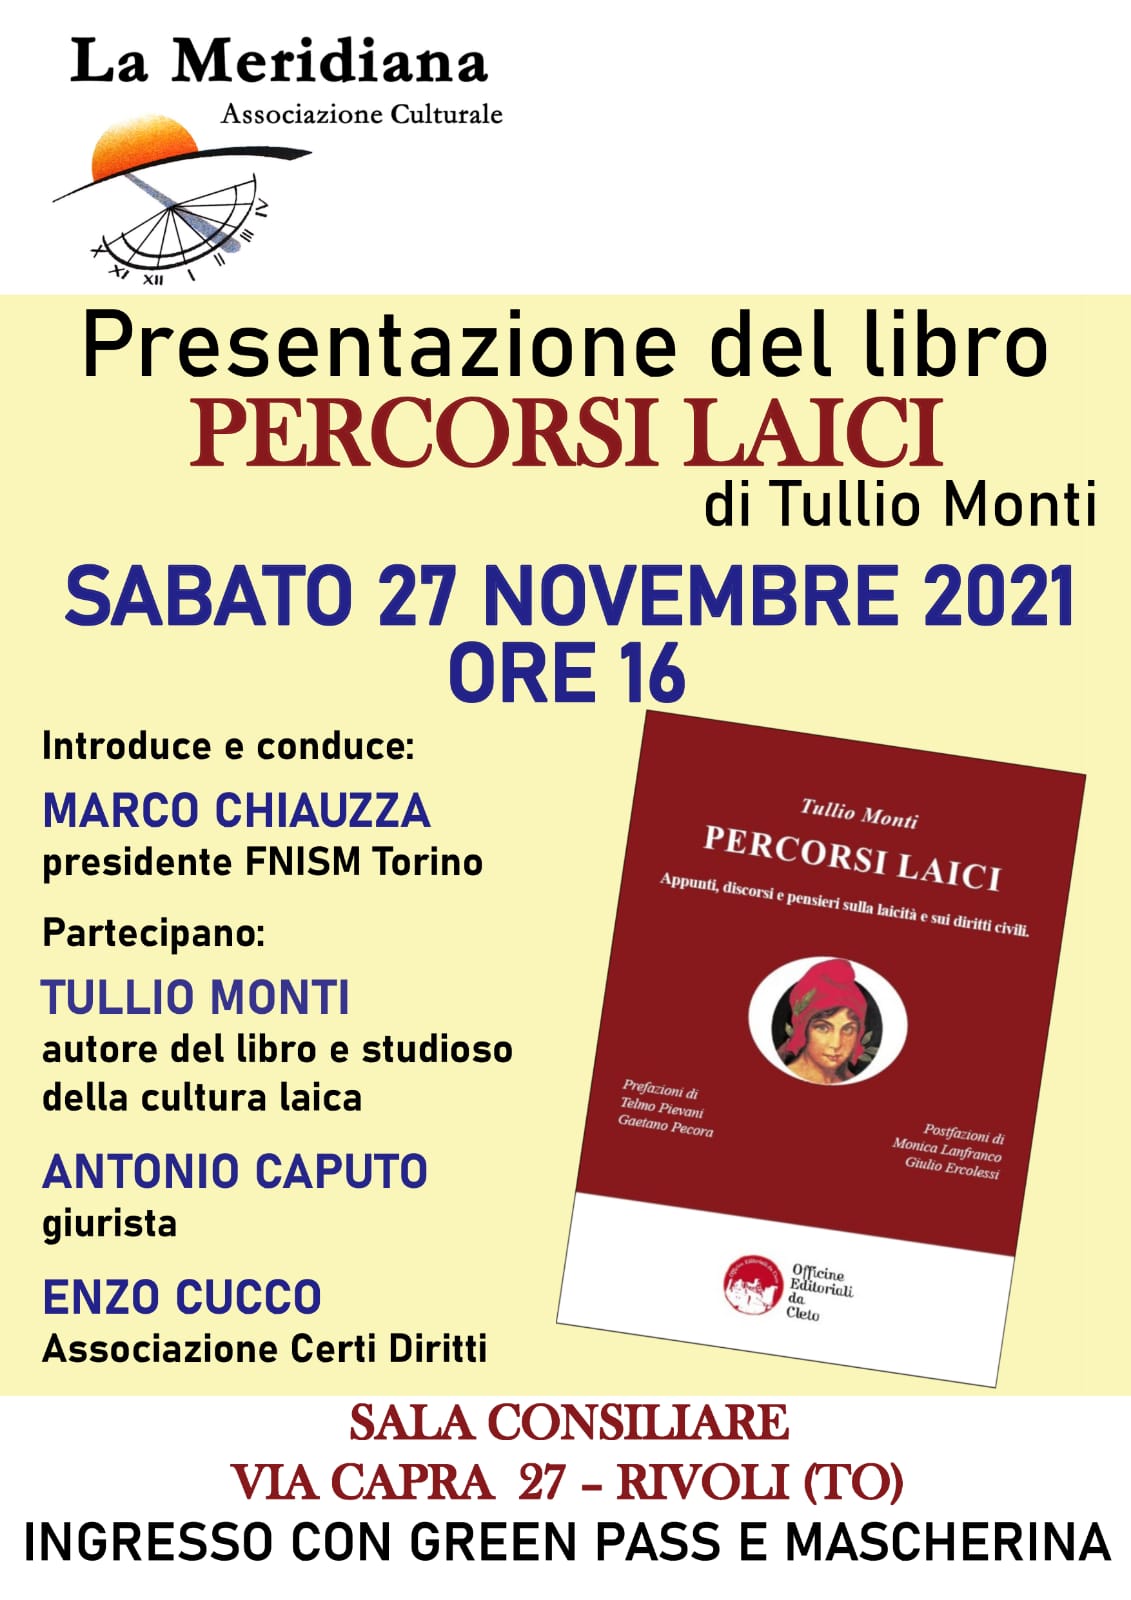 La locandina della presentazione del libro di Tullio Monti del 27 novembre 2021 a Rivoli (TO)